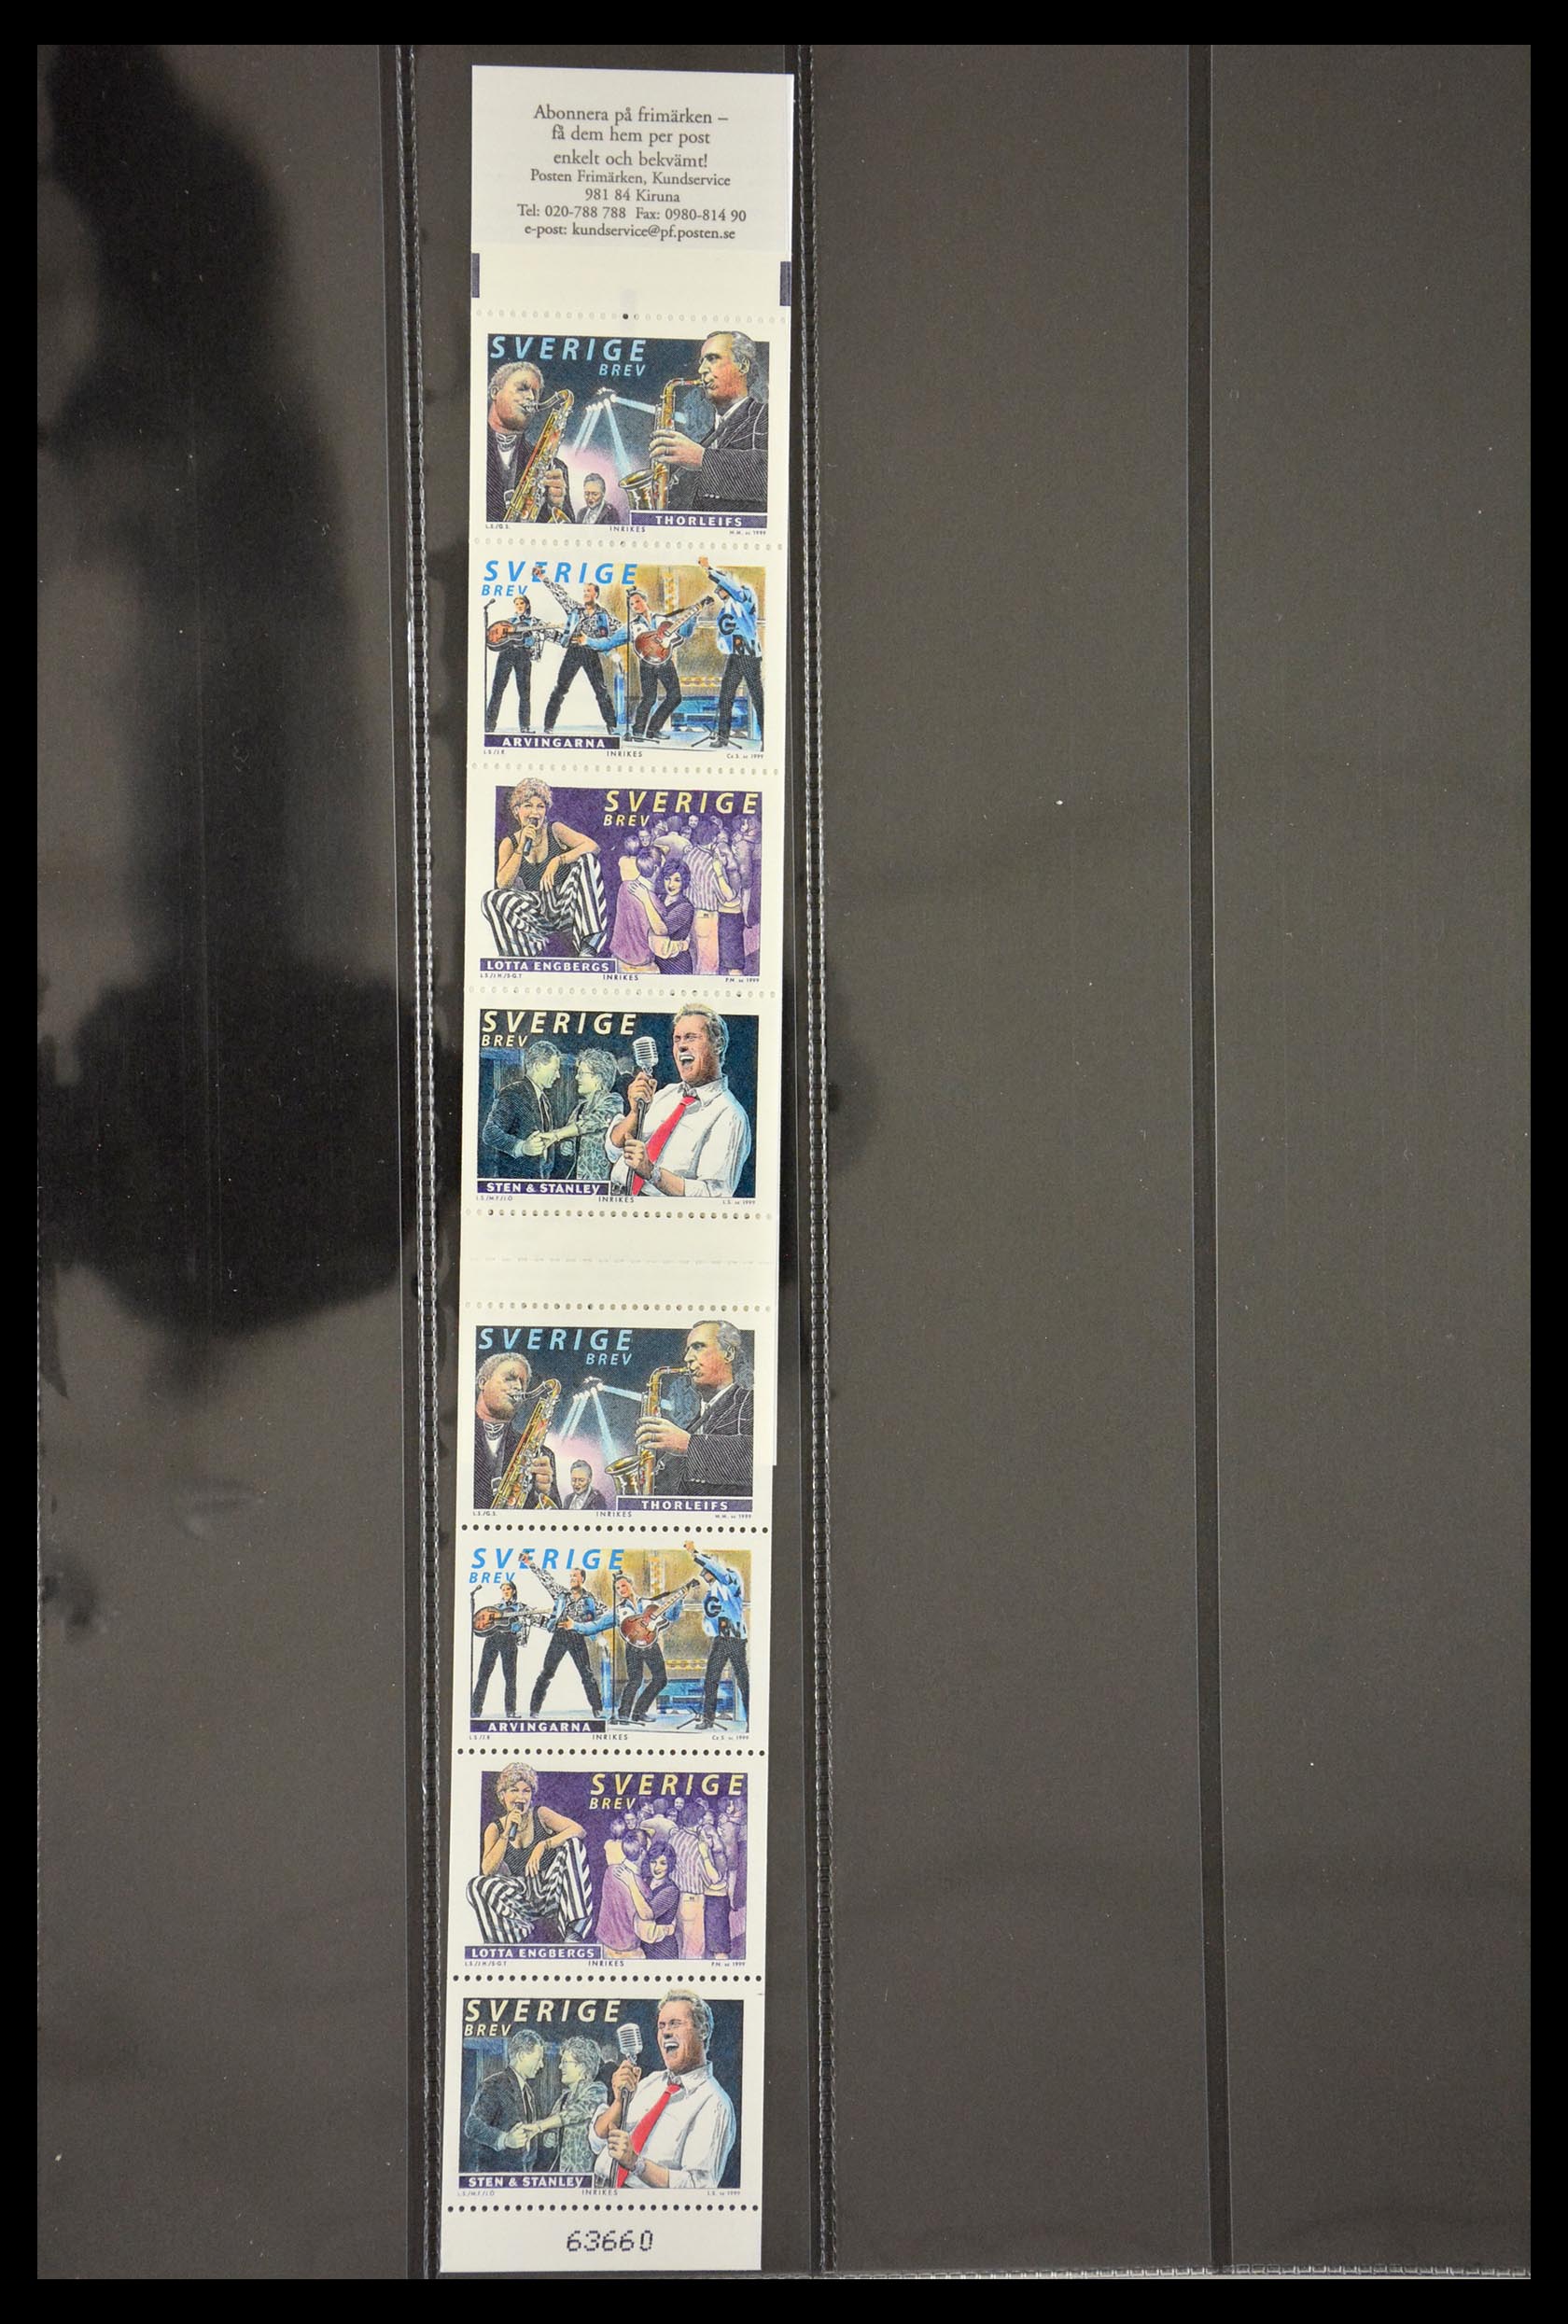 29368 127 - 29368 Sweden stamp booklets 1942-1996.